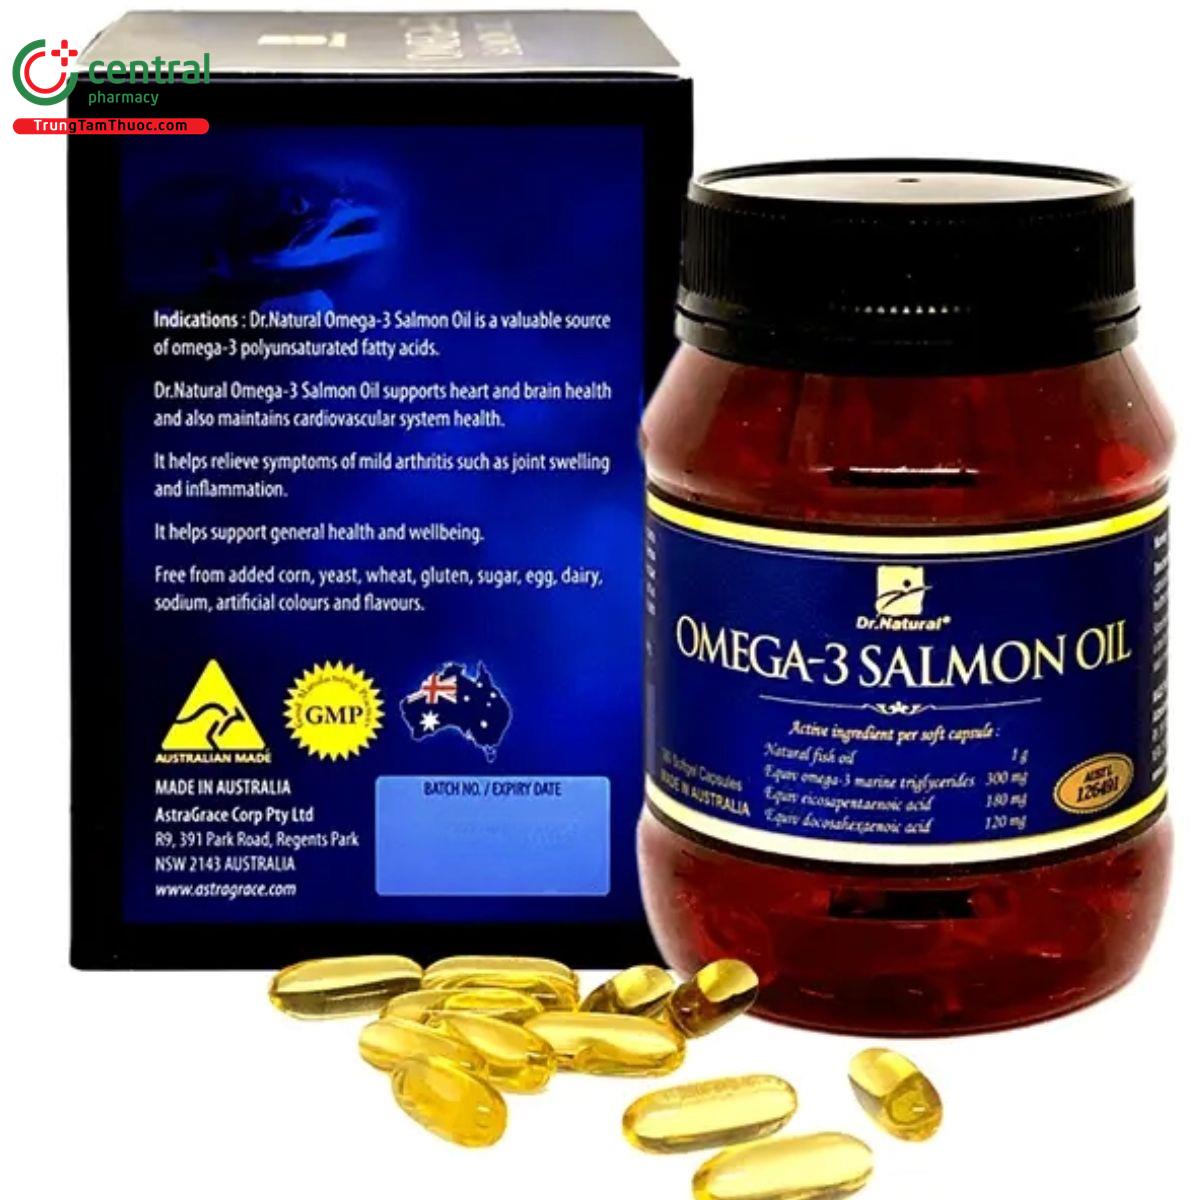 omega 3 salmon oil 3 H3464